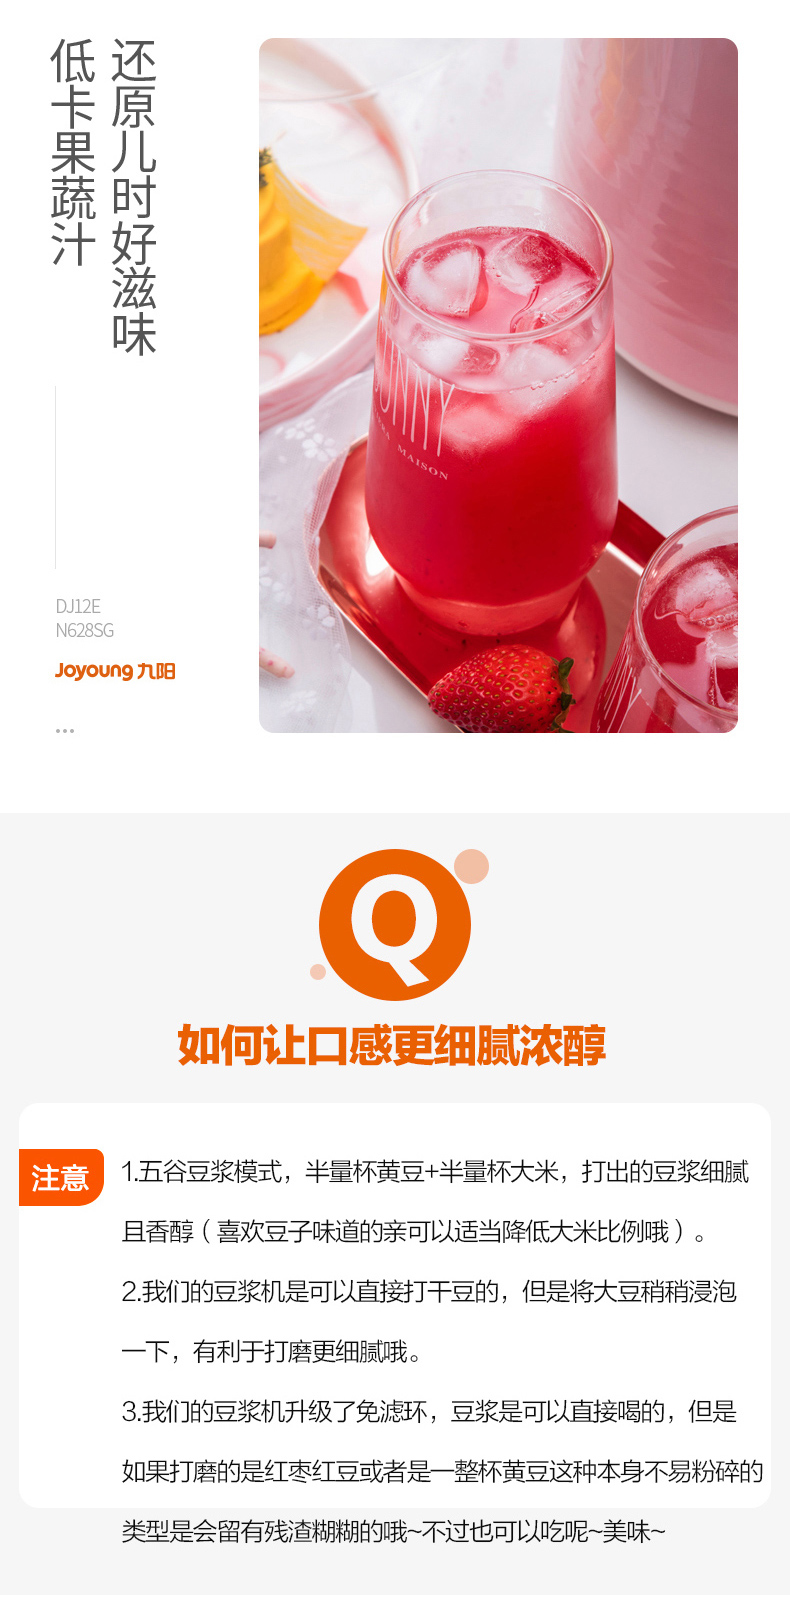 九阳/Joyoung  豆浆机家用全自动多功能智能煮免过滤迷你小型官方旗舰店正品